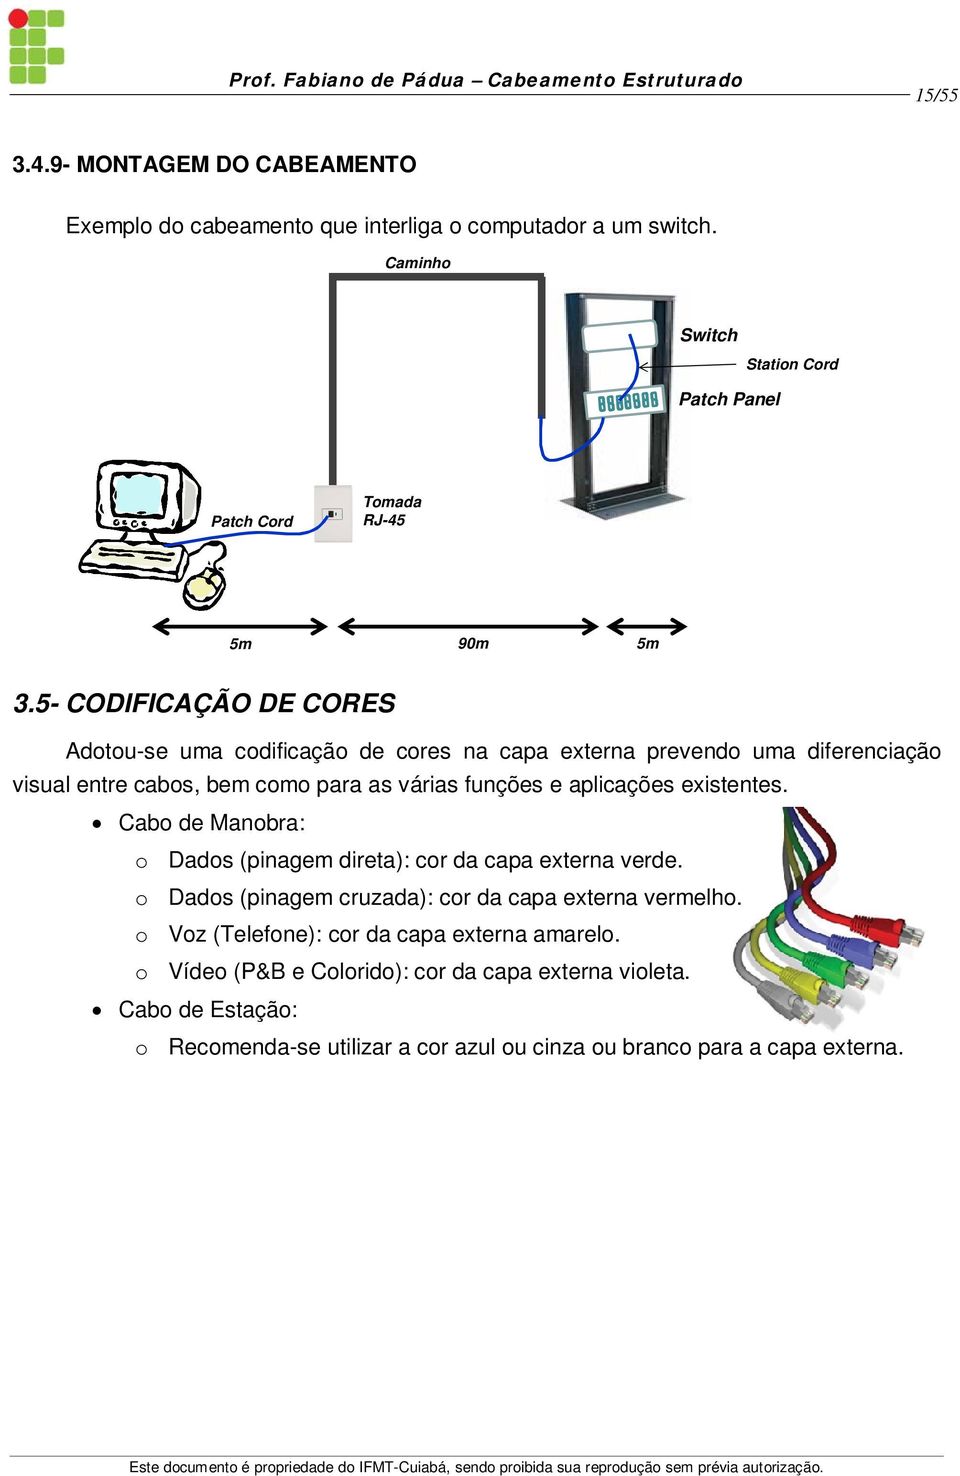 5- CODIFICAÇÃO DE CORES Adotou-se uma codificação de cores na capa externa prevendo uma diferenciação visual entre cabos, bem como para as várias funções e aplicações